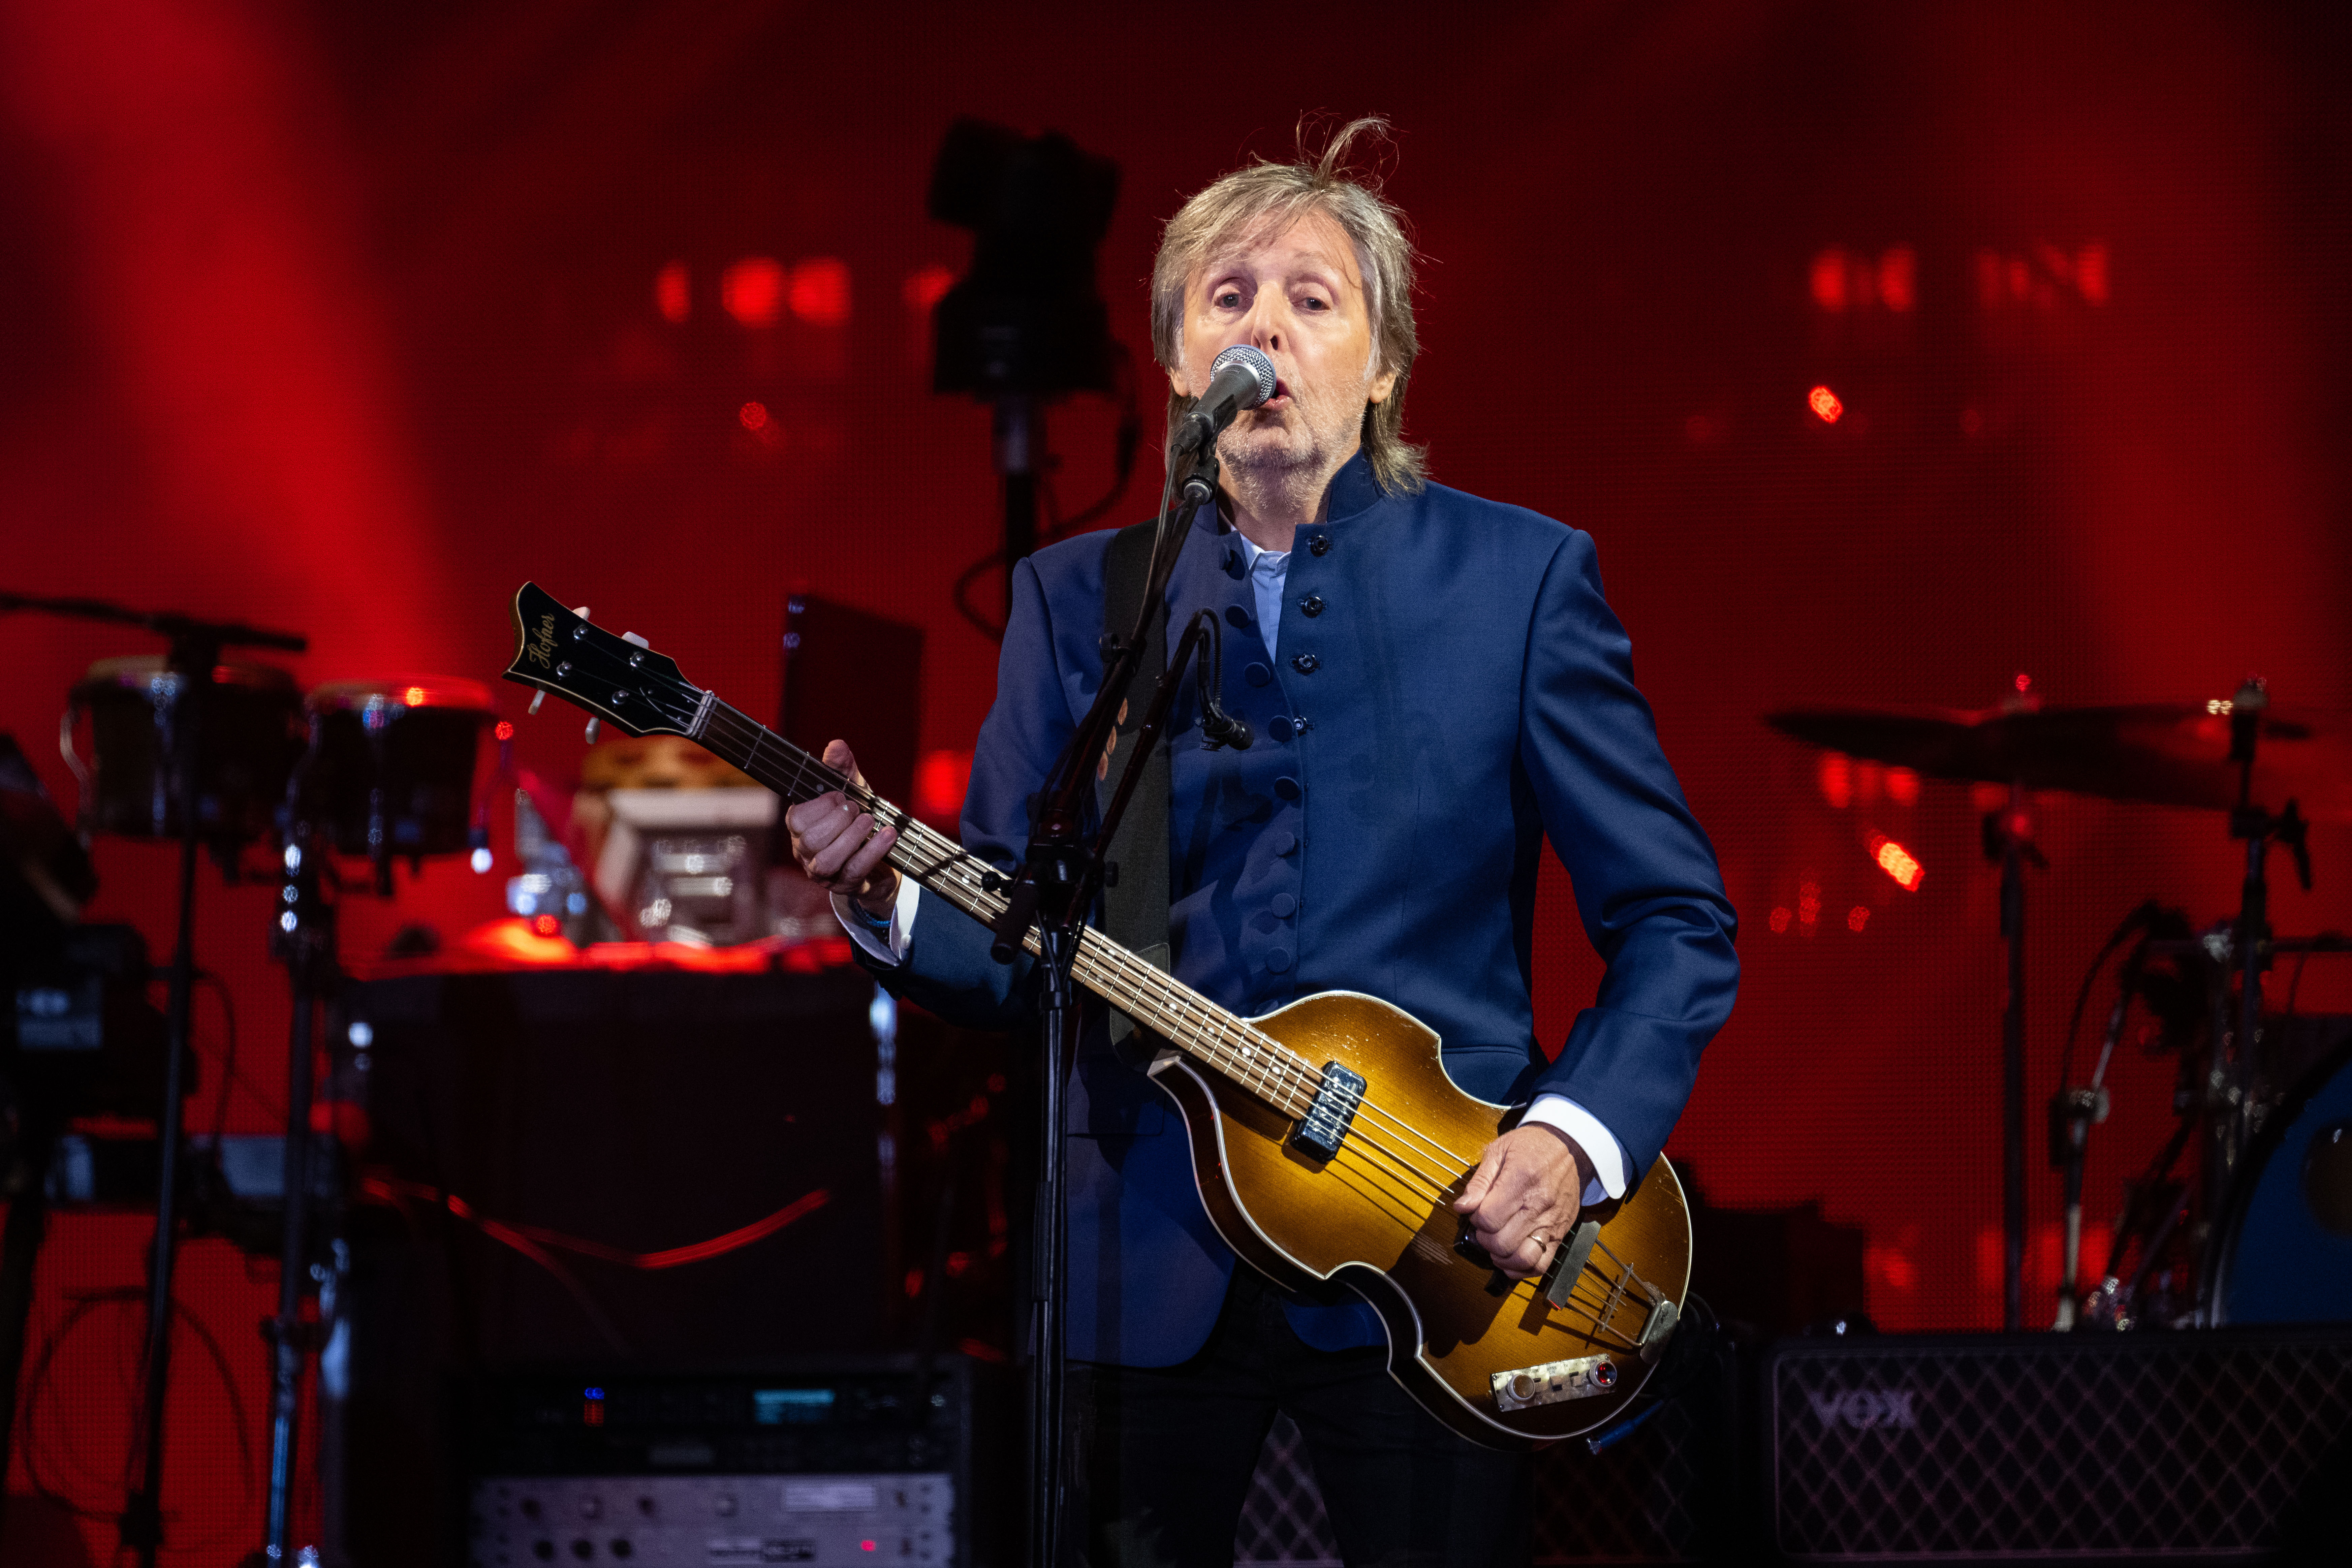 El responsable de agendar los conciertos de Paul McCartney a nivel mundial desmintió la información de la Secretaría de Cultura de Bogotá.